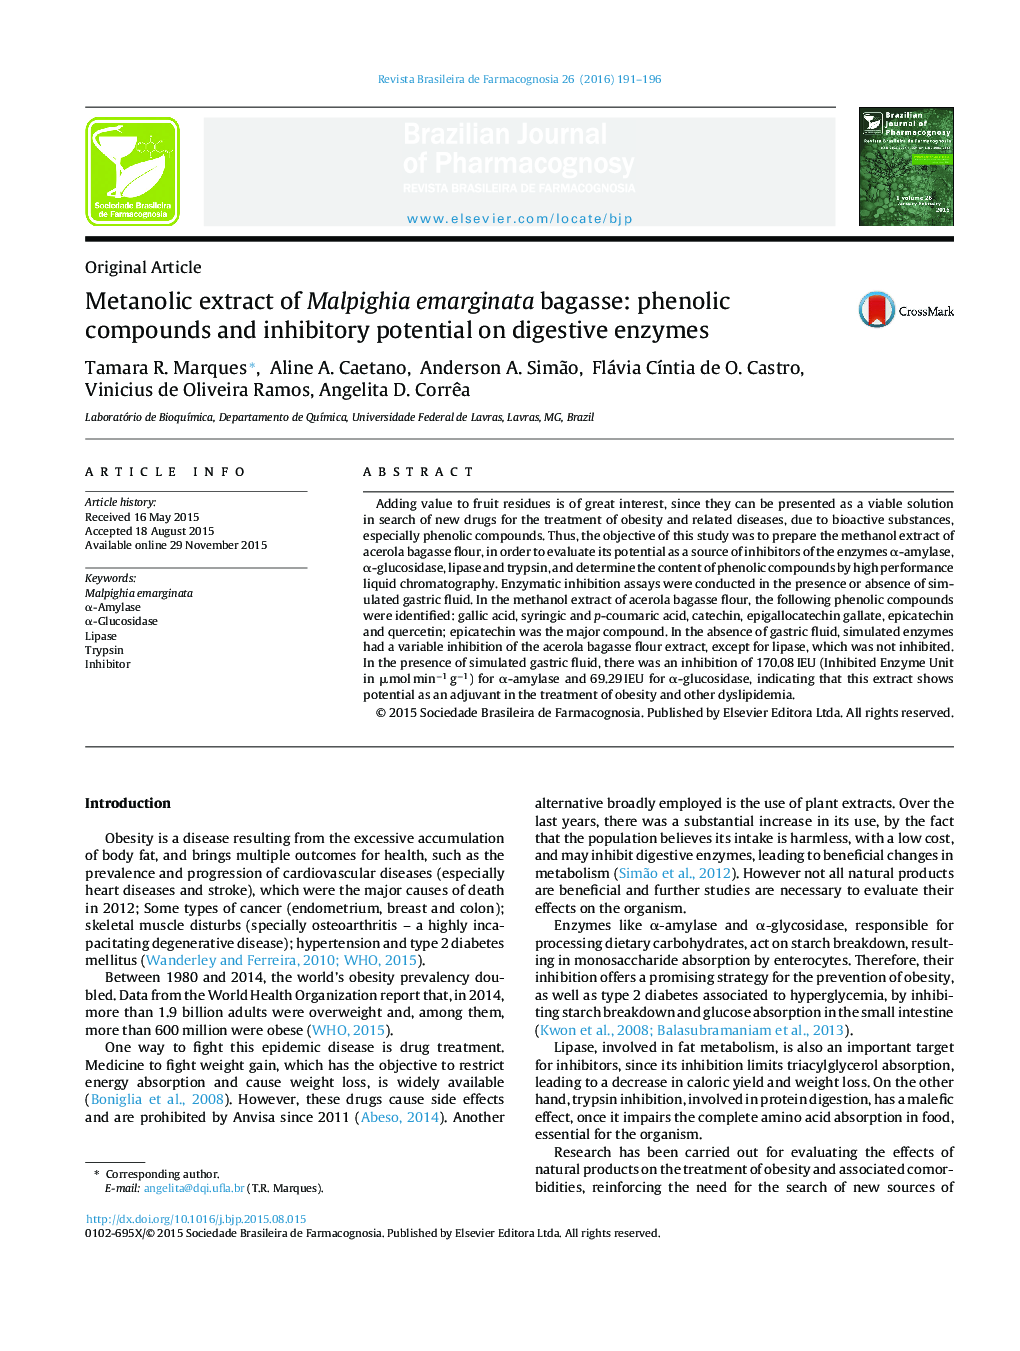 عصاره متانولی Malpighia emarginata bagasse: ترکیبات فنلی و پتانسیل مهارکننده آنزیم های گوارشی